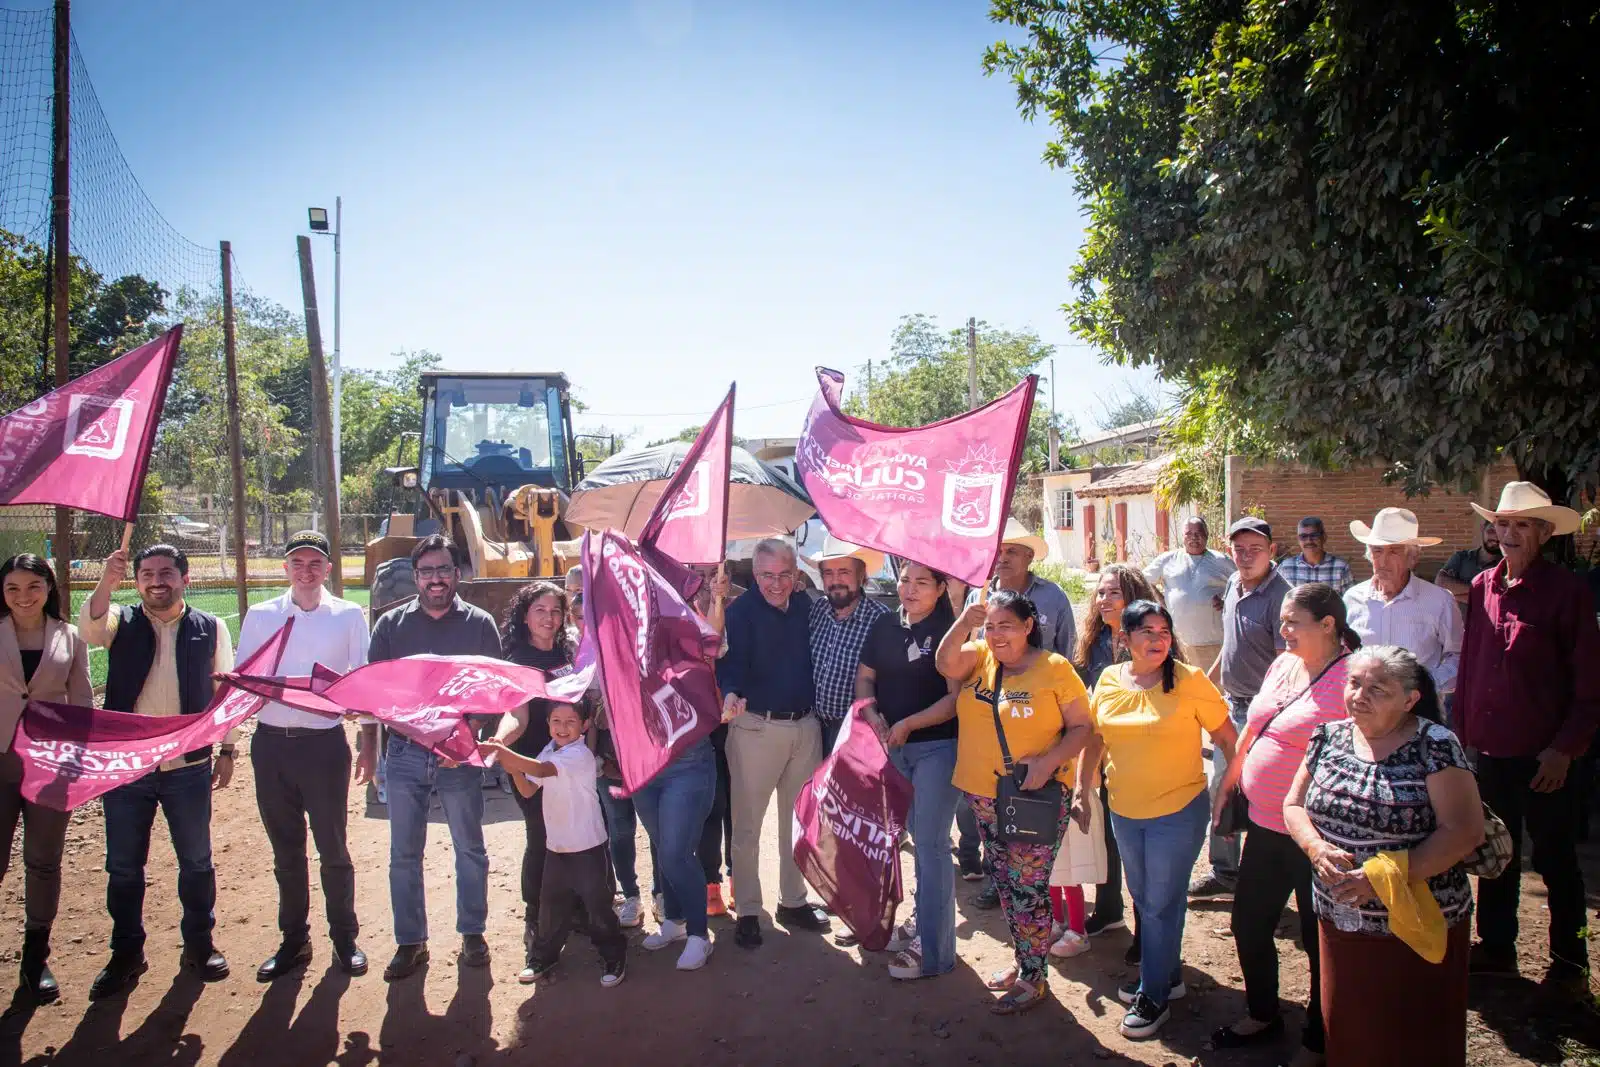 Alcalde de Culiacán da banderazo a los trabajos de pavimentación de calle en Tepuche, Culiacán